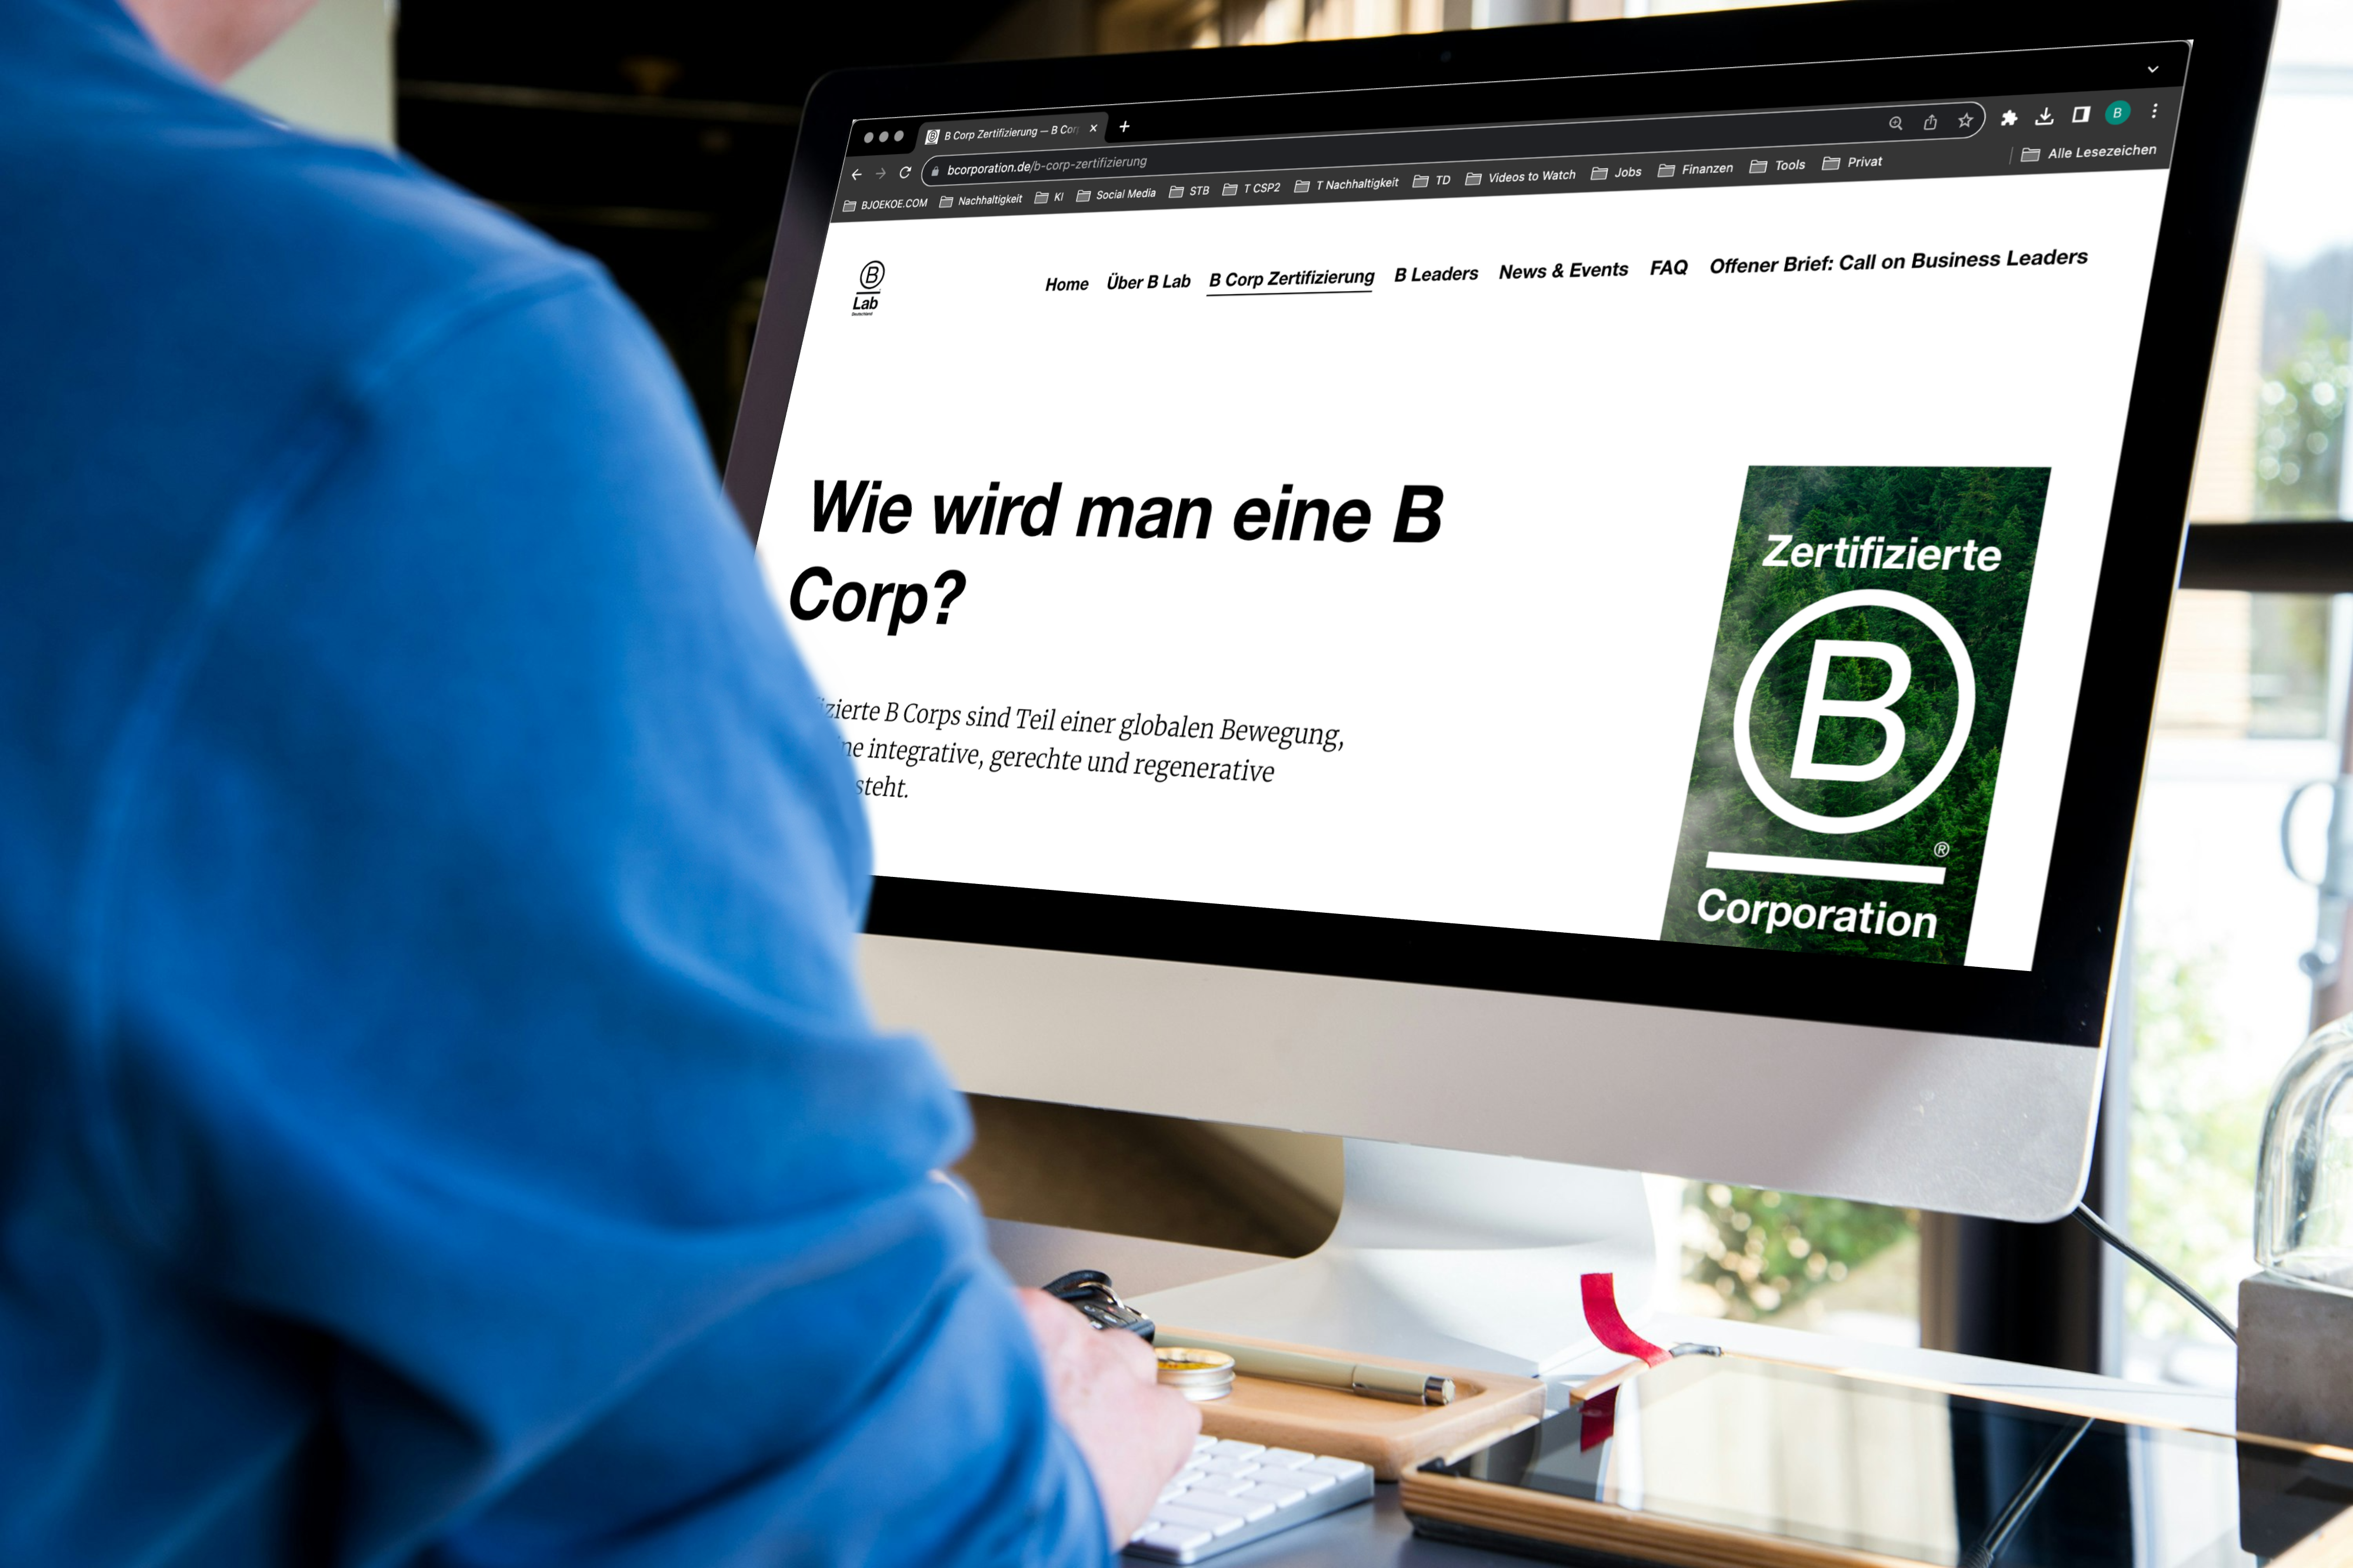 Computerbildschirm mit geöffneter Website von B Lab Deutschland und der Frage "Wie wird man eine B Corp?"